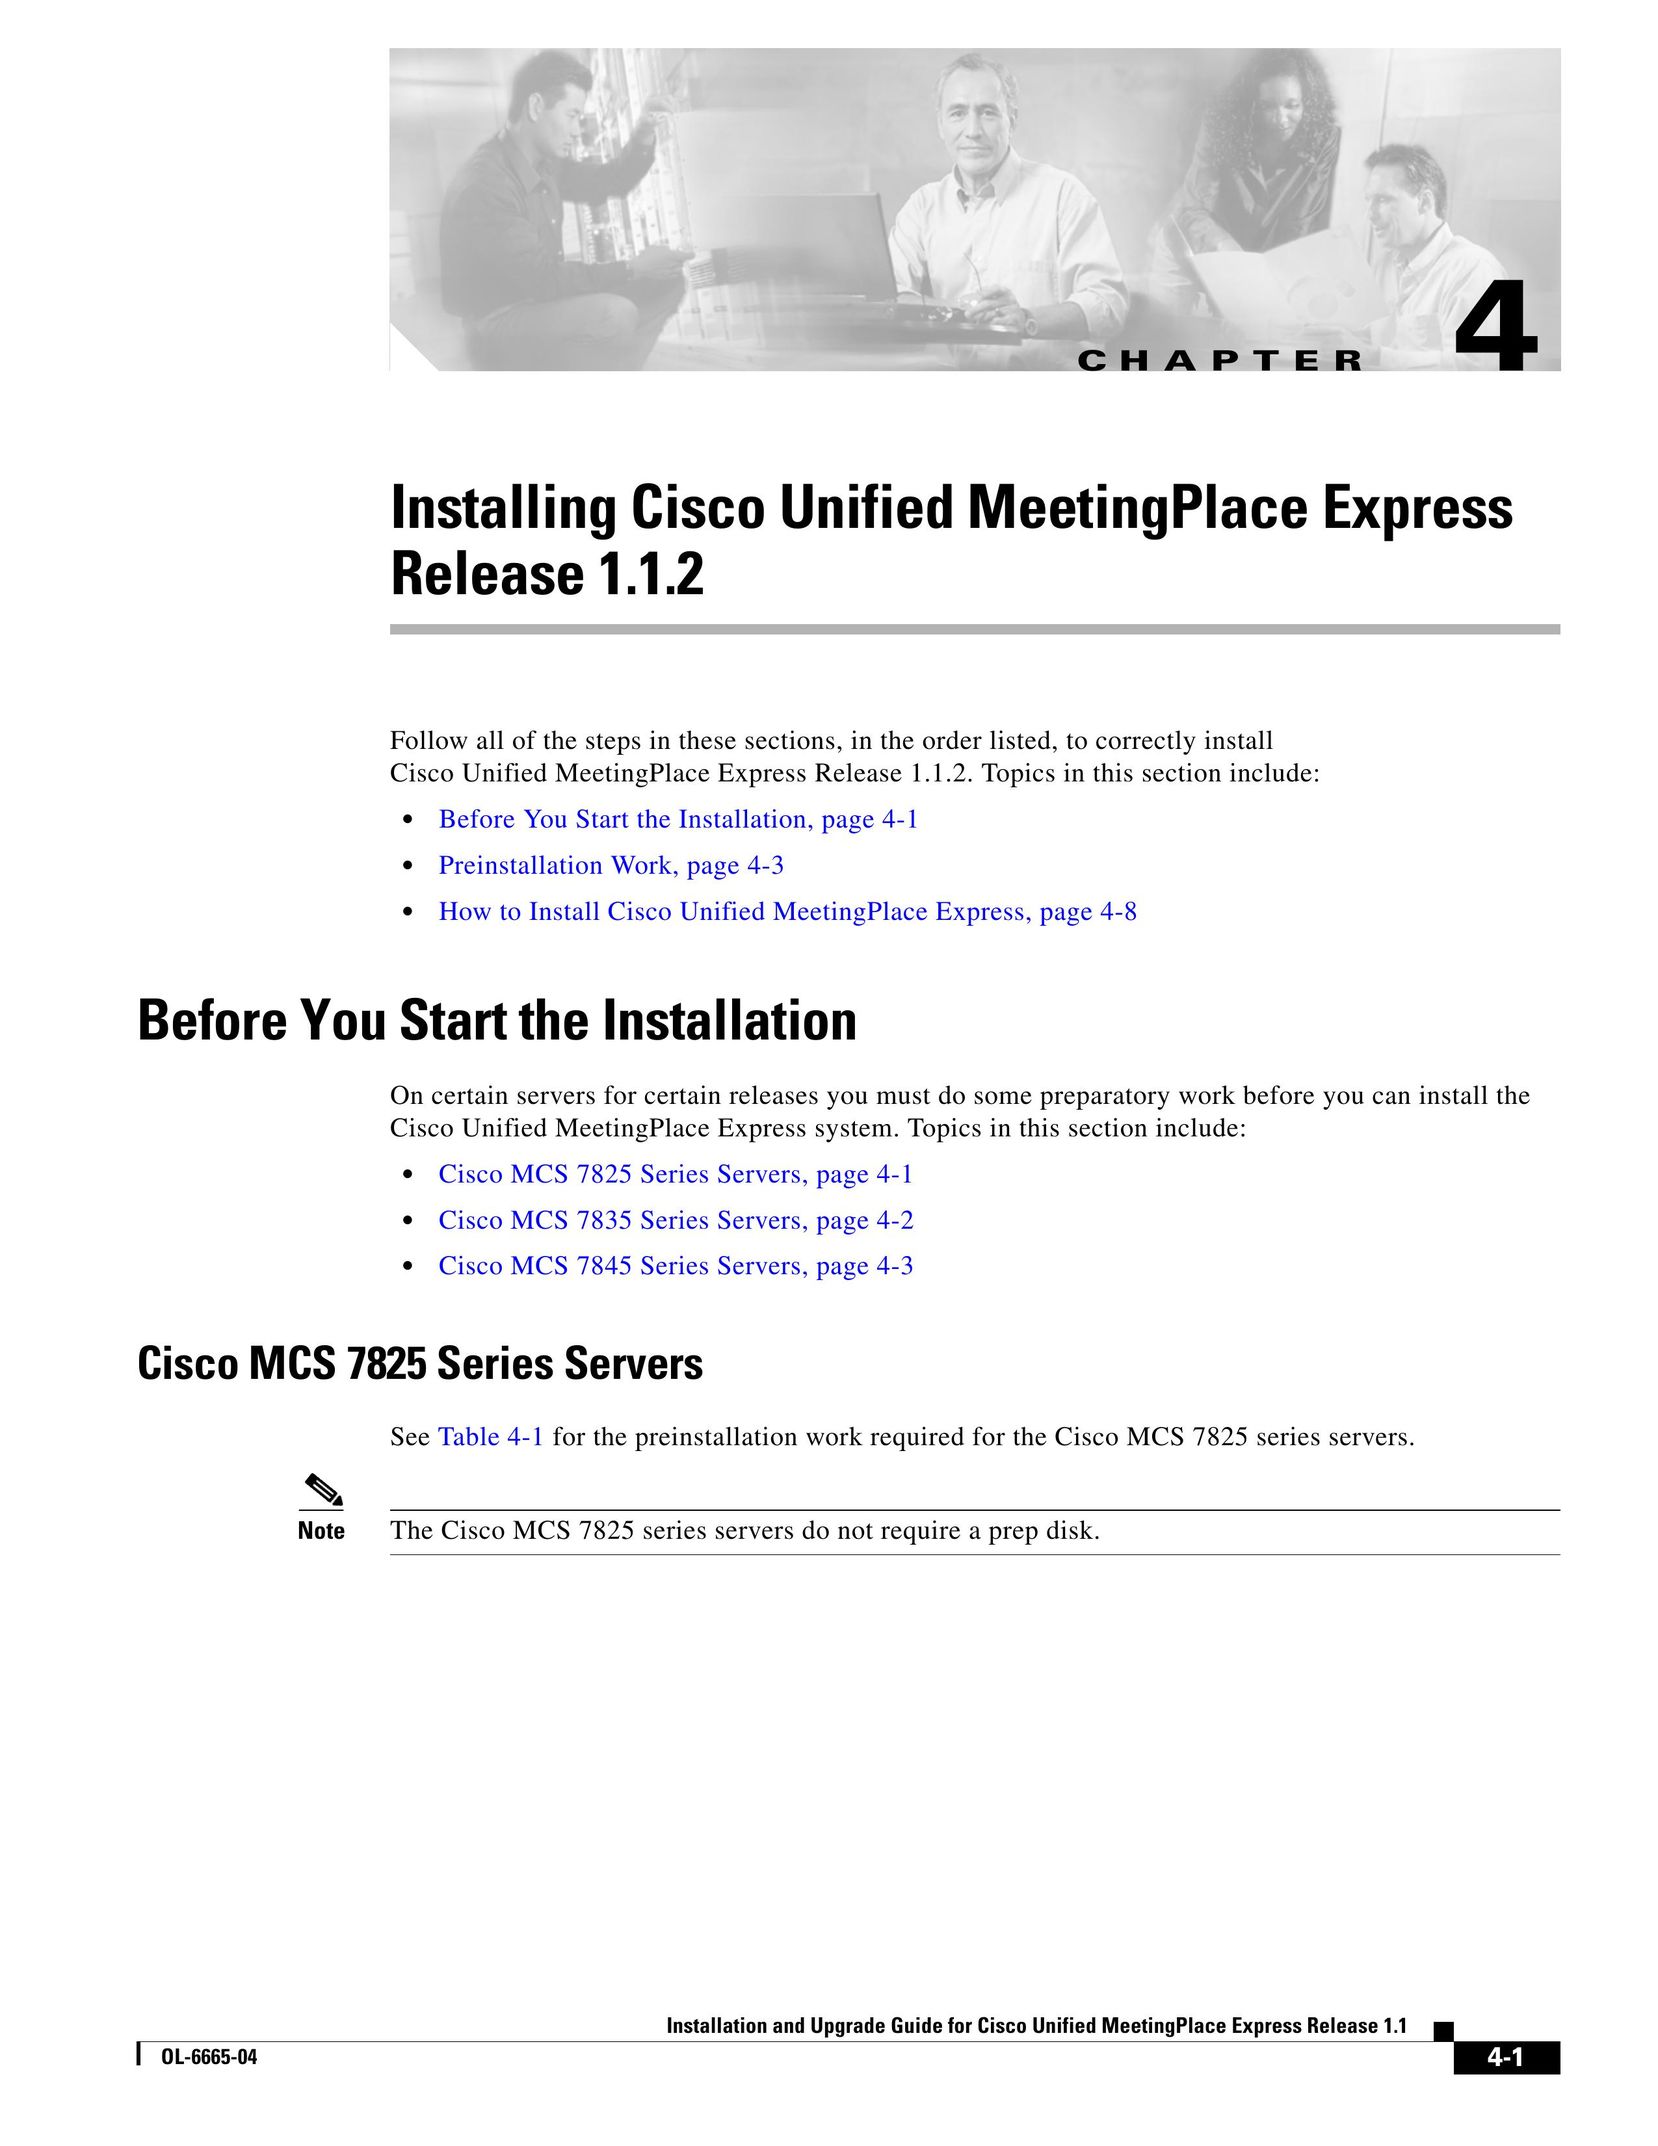 Cisco Systems MCS 7845 Server User Manual